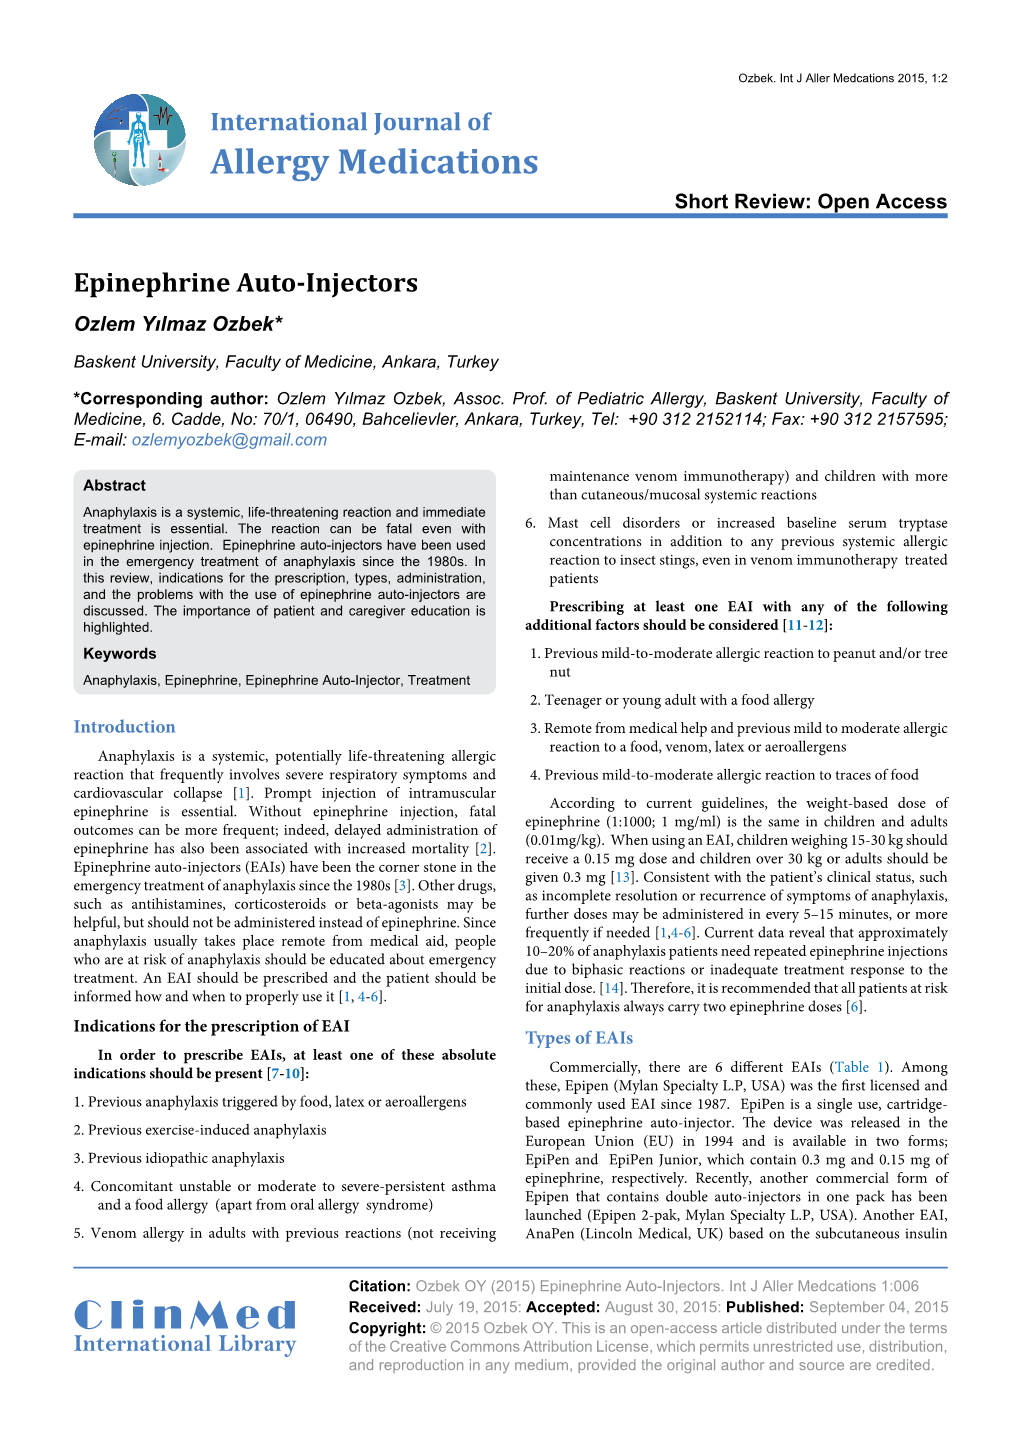 Epinephrine Auto-Injectors Ozlem Yılmaz Ozbek*